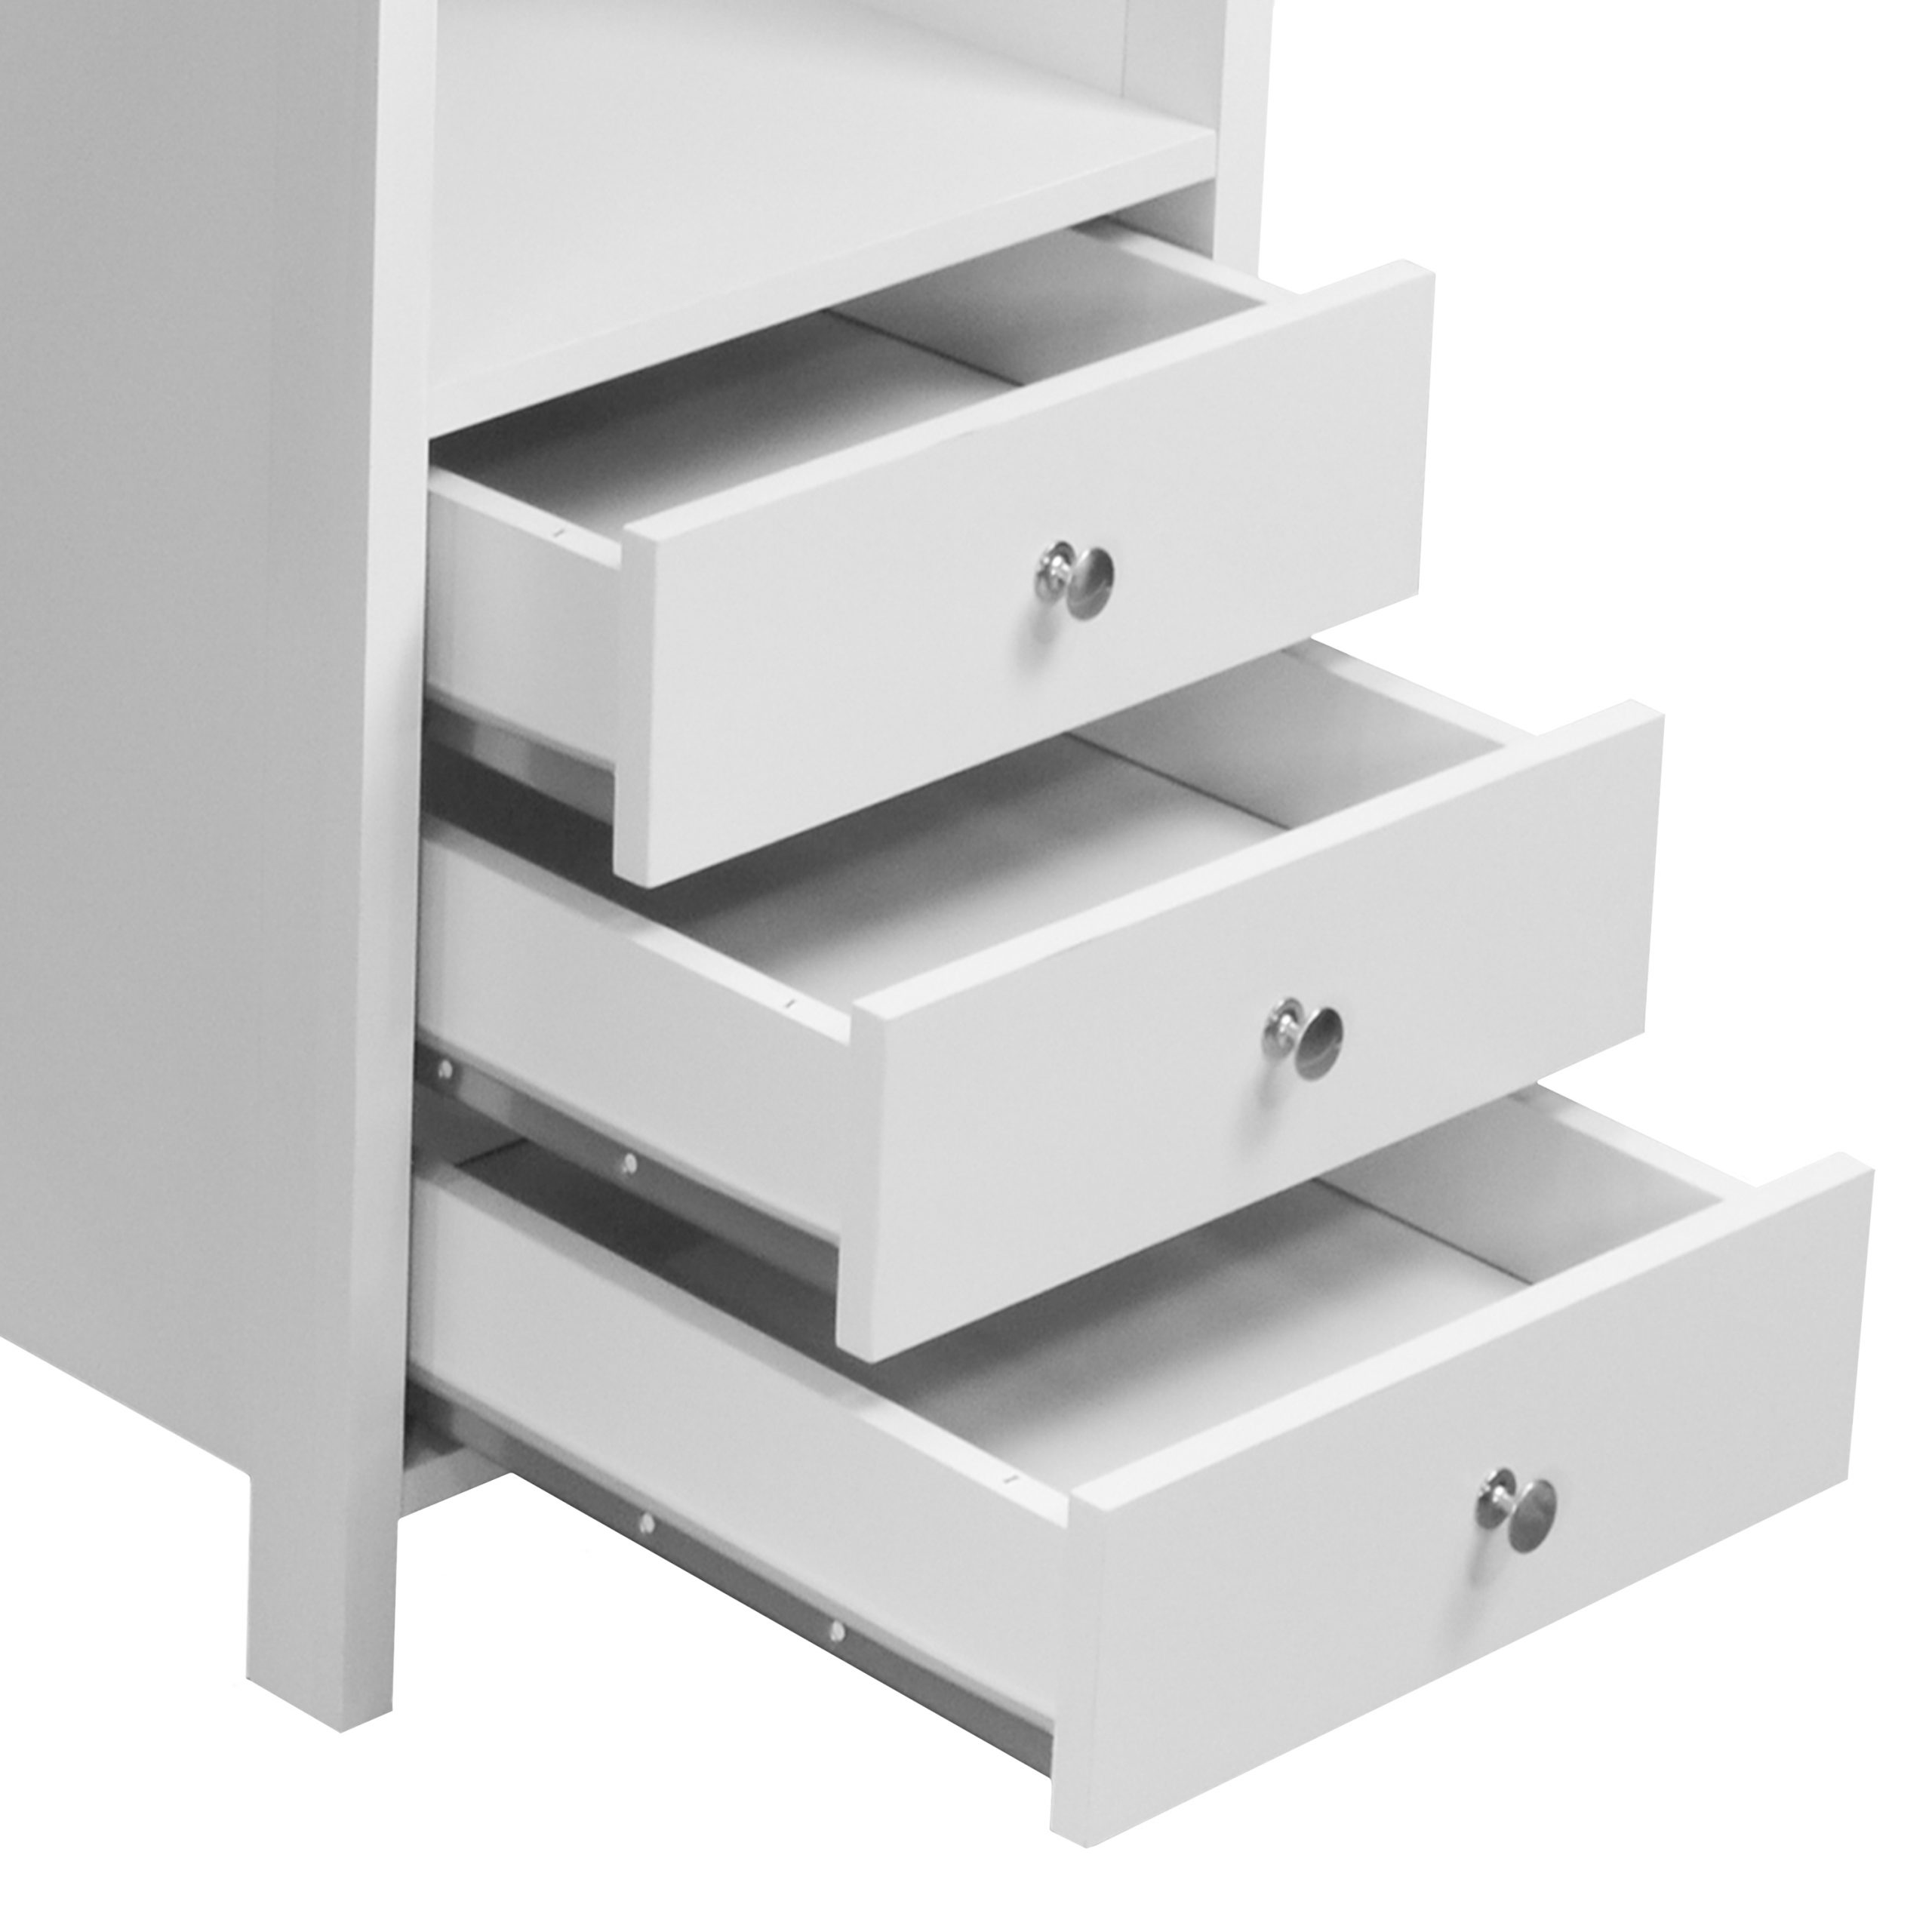 Techni Mobili Contempo Desk With 3 Storage Drawers White Awzhome